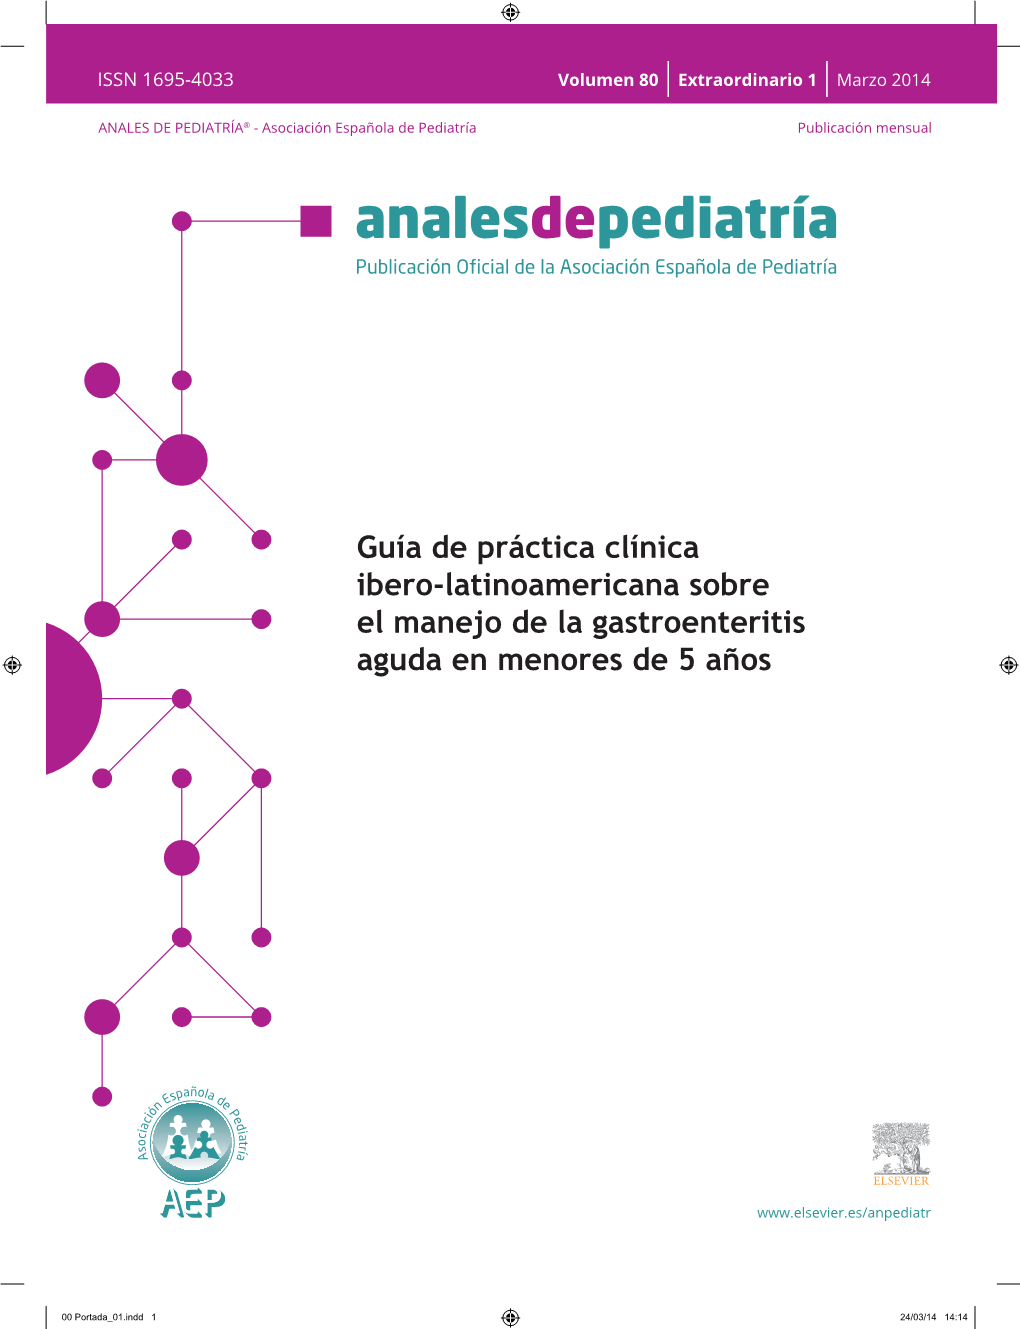 Guía De Práctica Clínica Ibero-Latinoamericana Sobre El Manejo De La Gastroenteritis Aguda En Menores De 5 Años